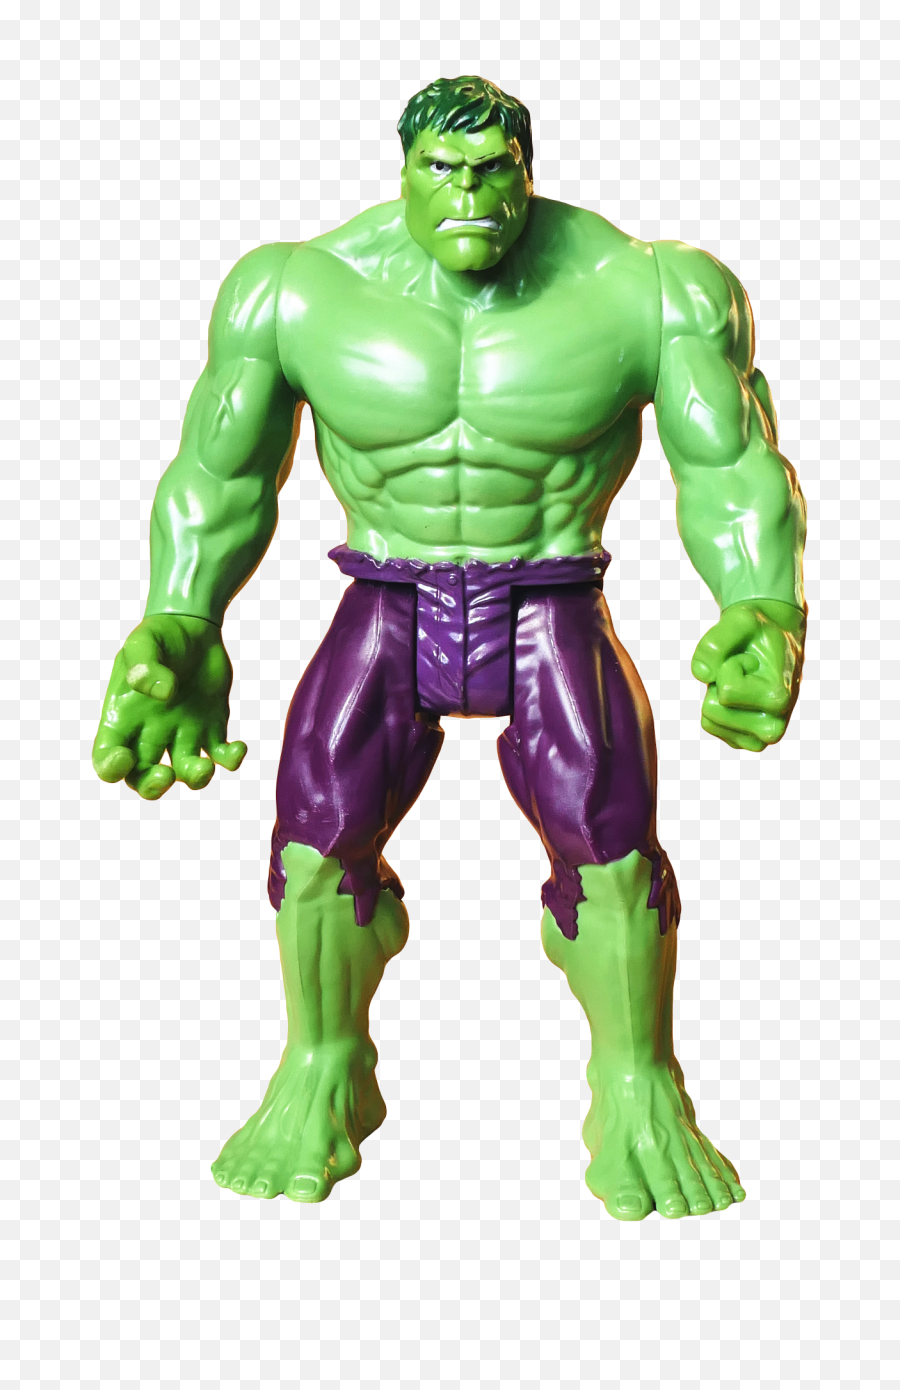 Hulk Png Transparent Image - Pngpix Hulk Png Transparent,Superhero Png